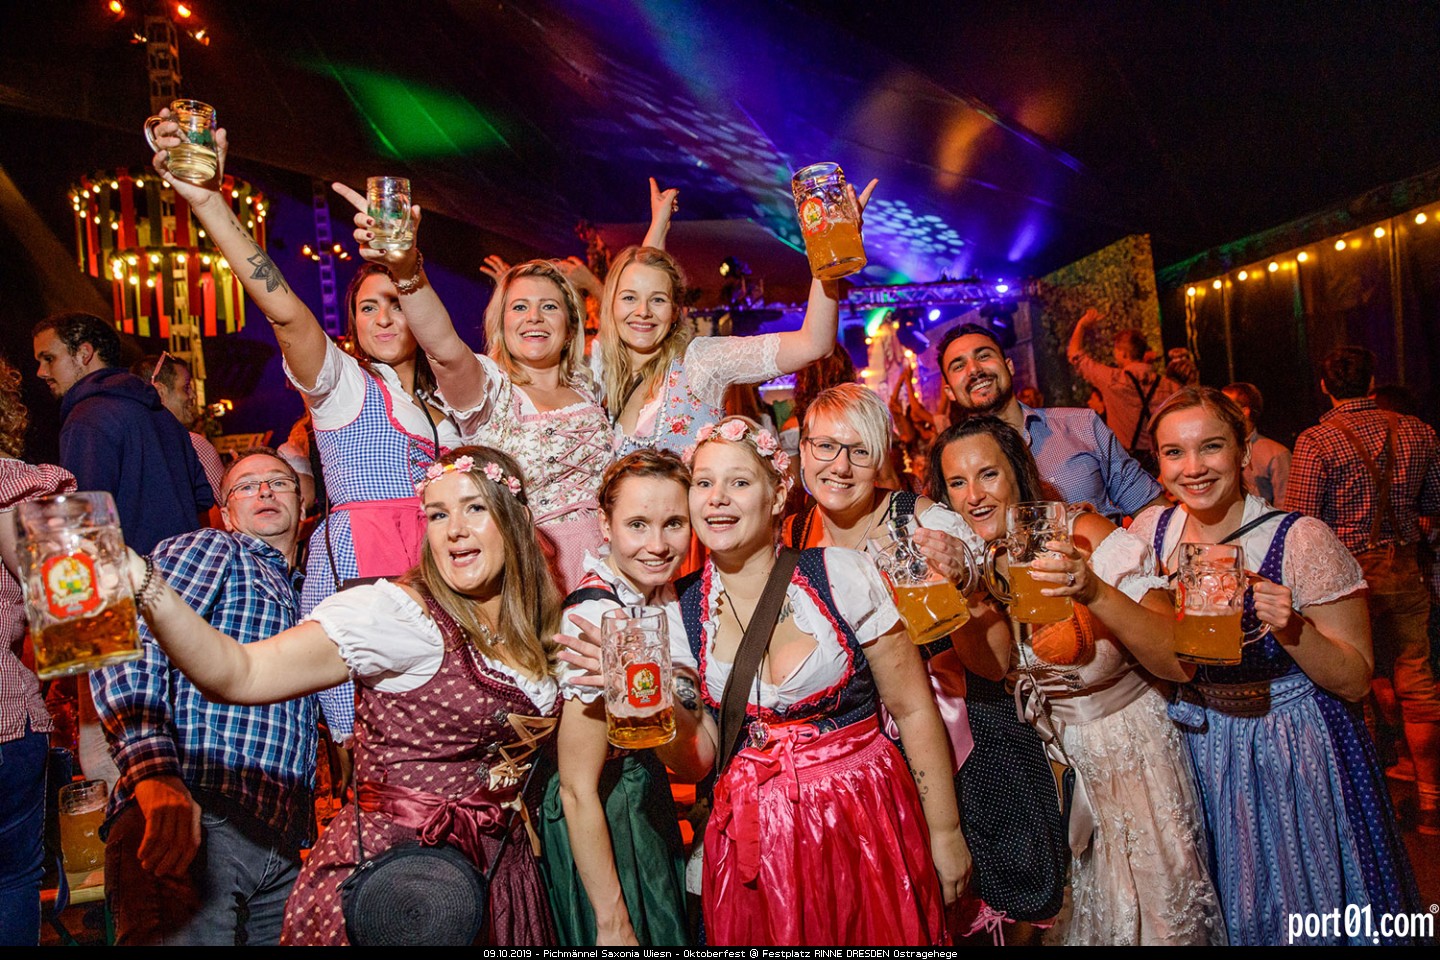 Pichmännel Saxonia Wiesn - Oktoberfest